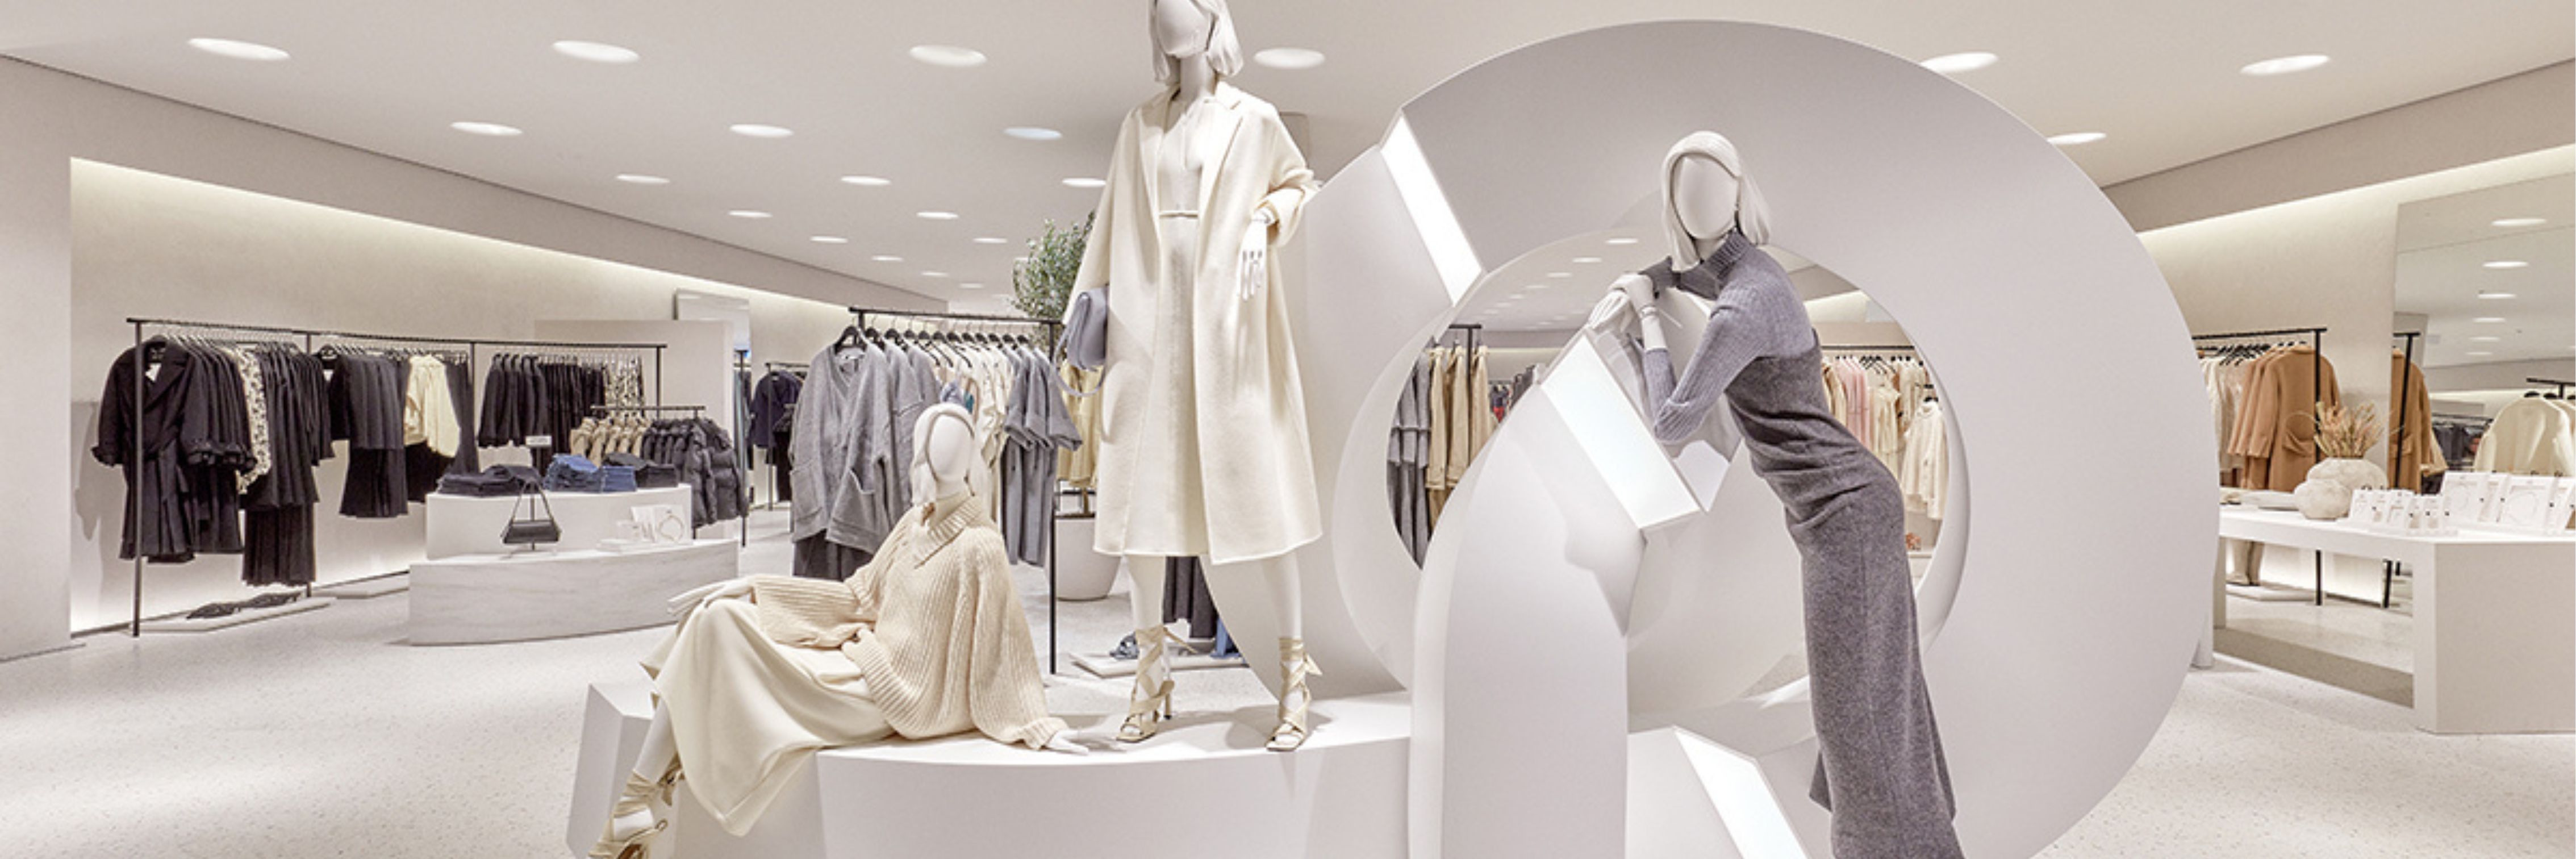 Zara opent déze week grootste winkel ter wereld in Rotterdam: dit is de exacte dag